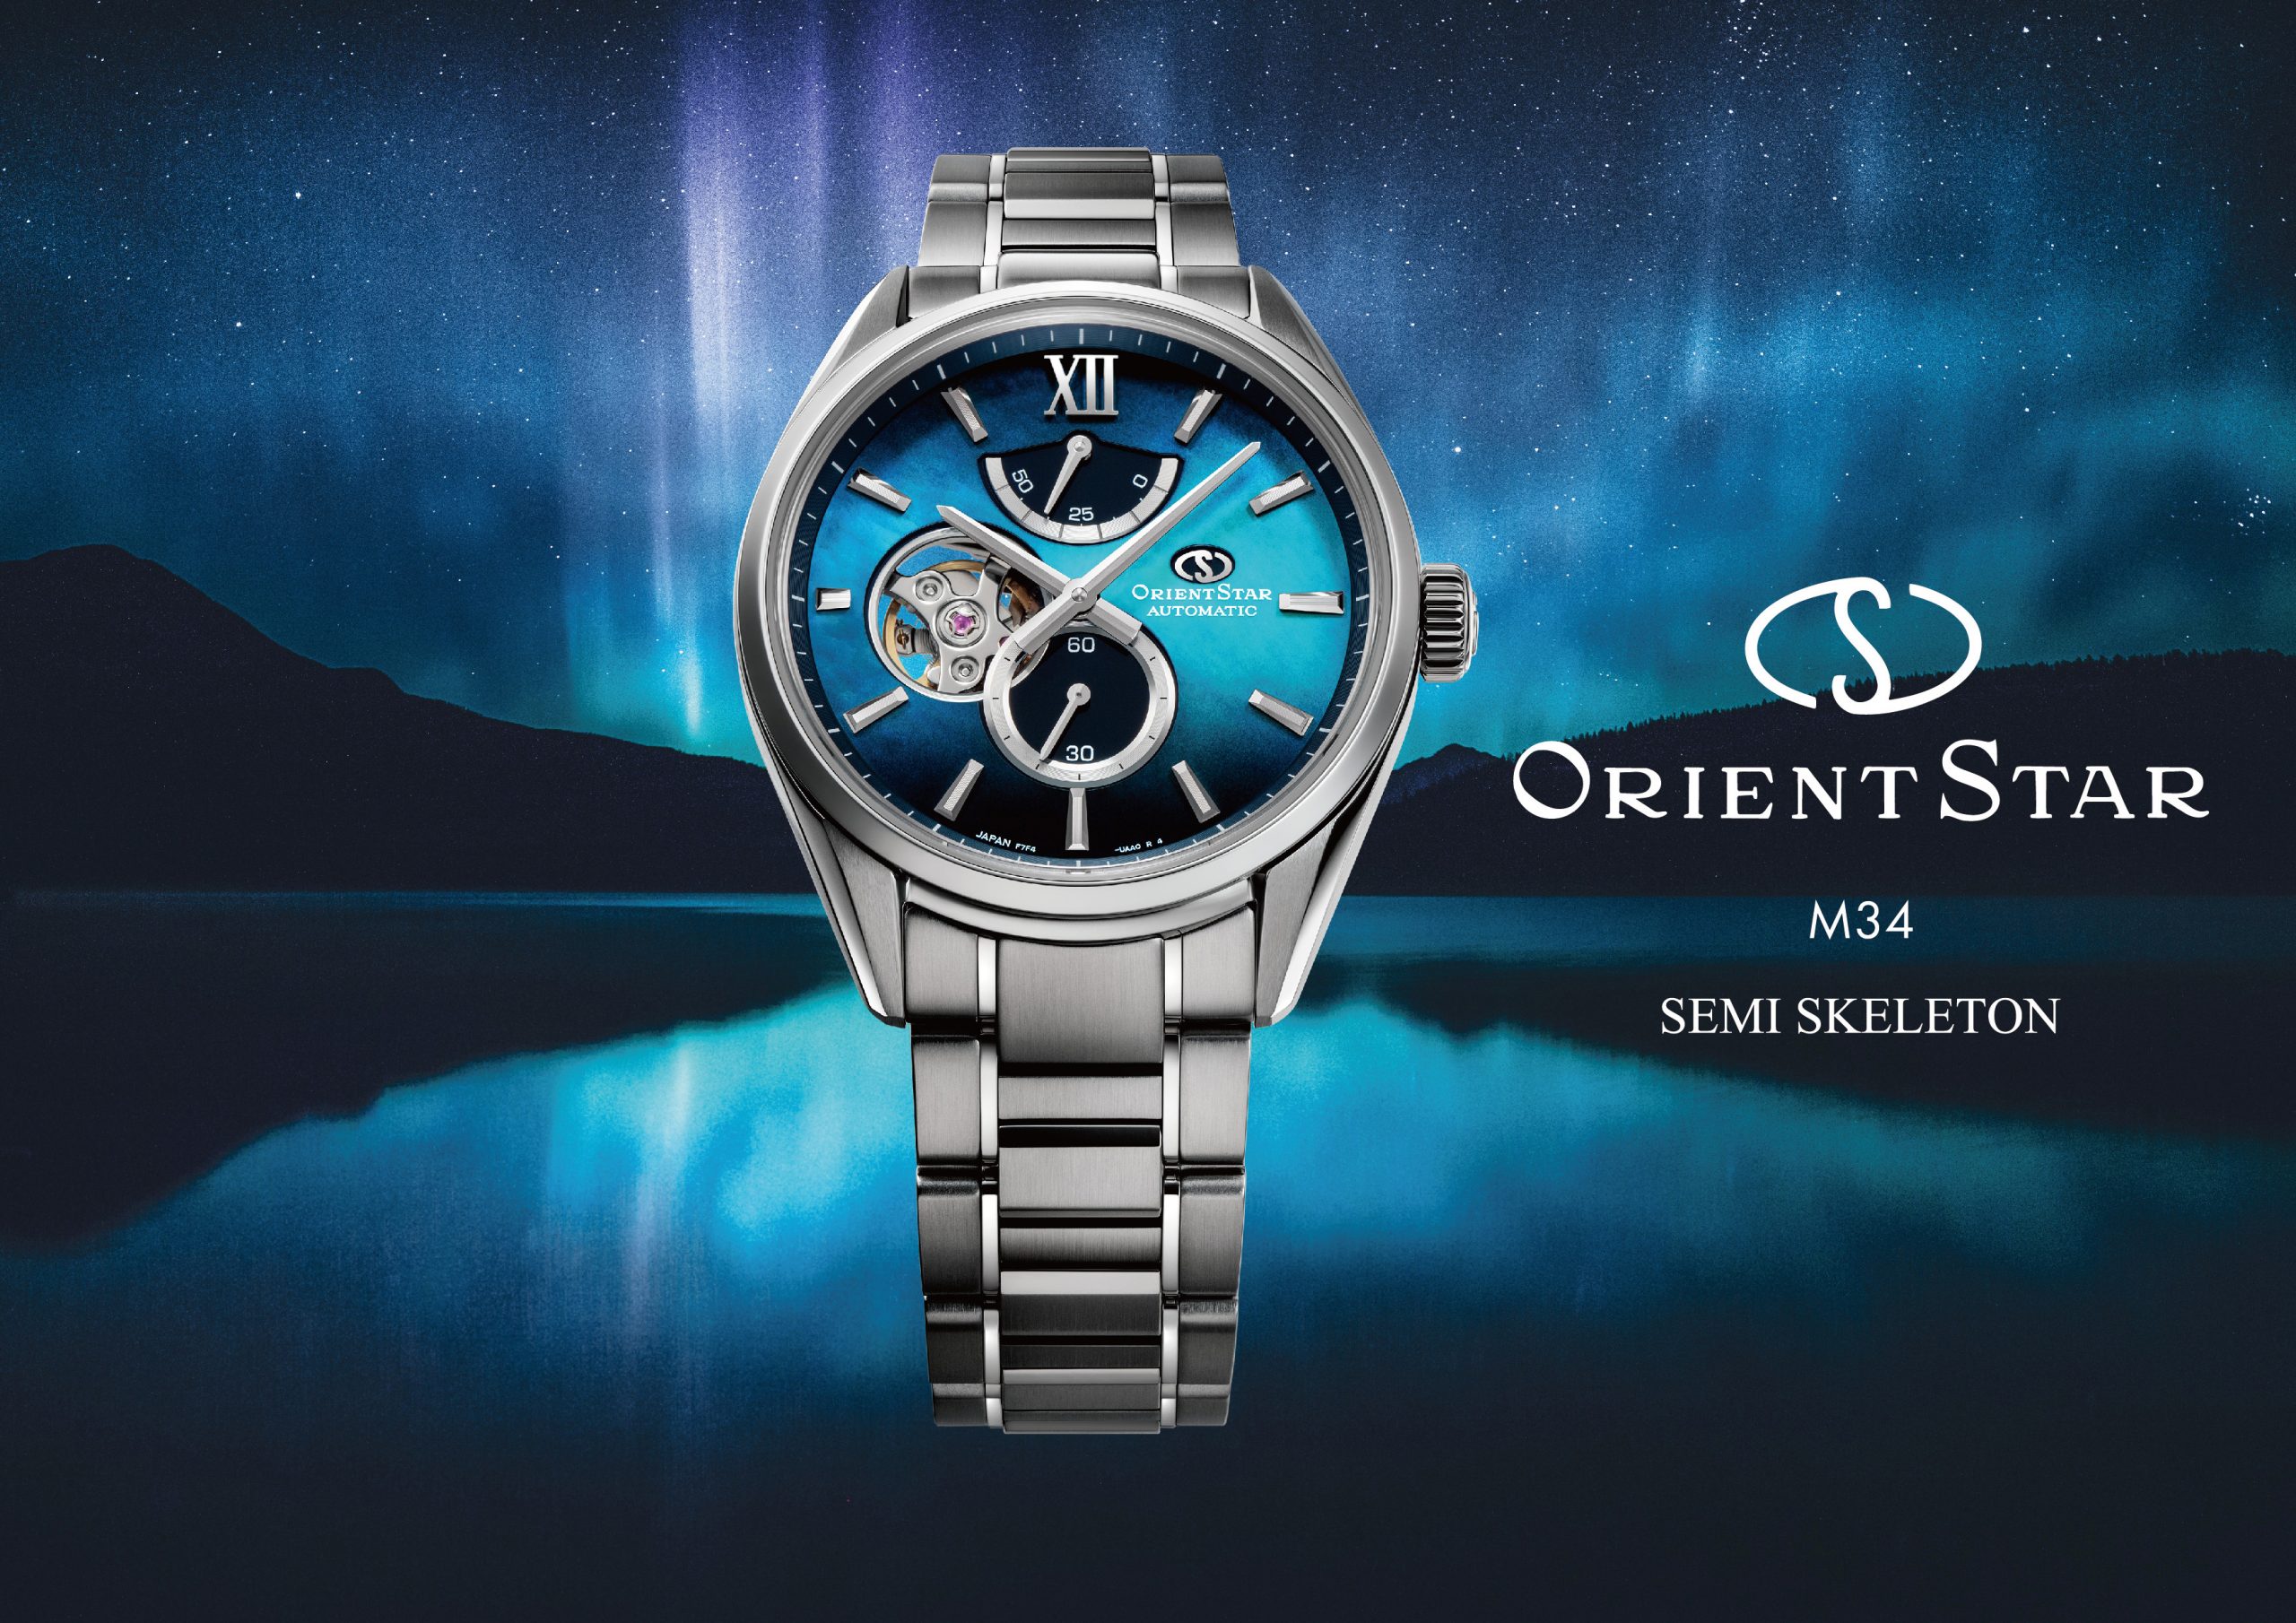 Orient Star's Aurora-Inspired M34 F7 Semi Skeleton Watches